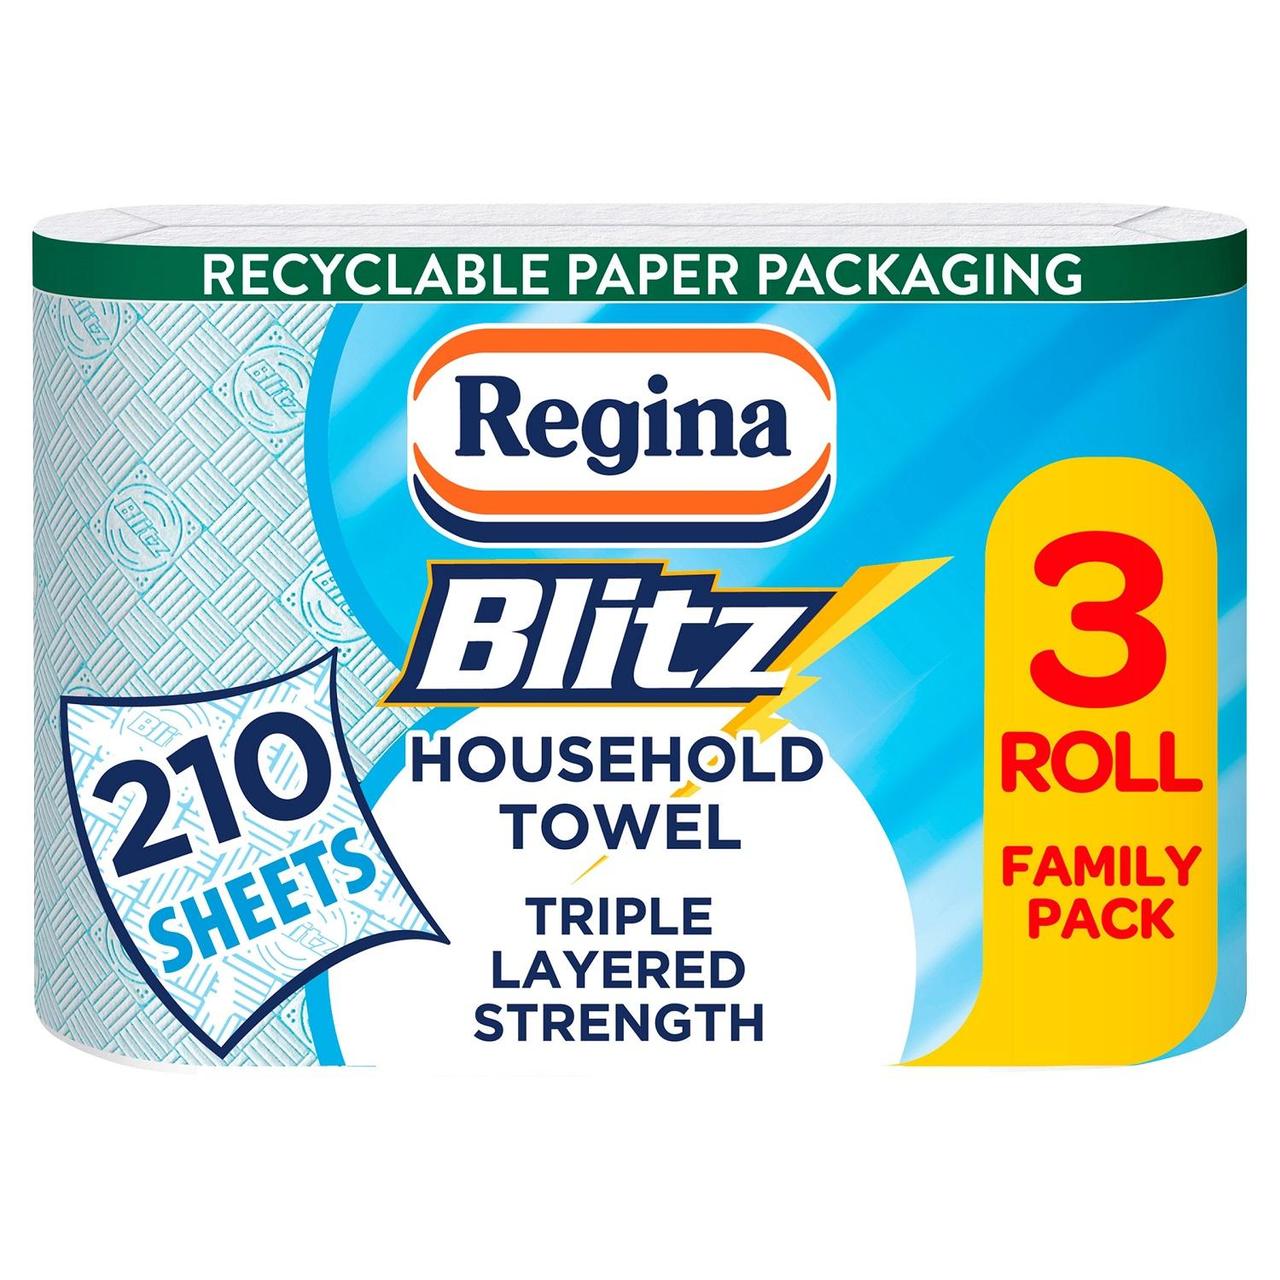 Rigina Blitz 3 Household Towel